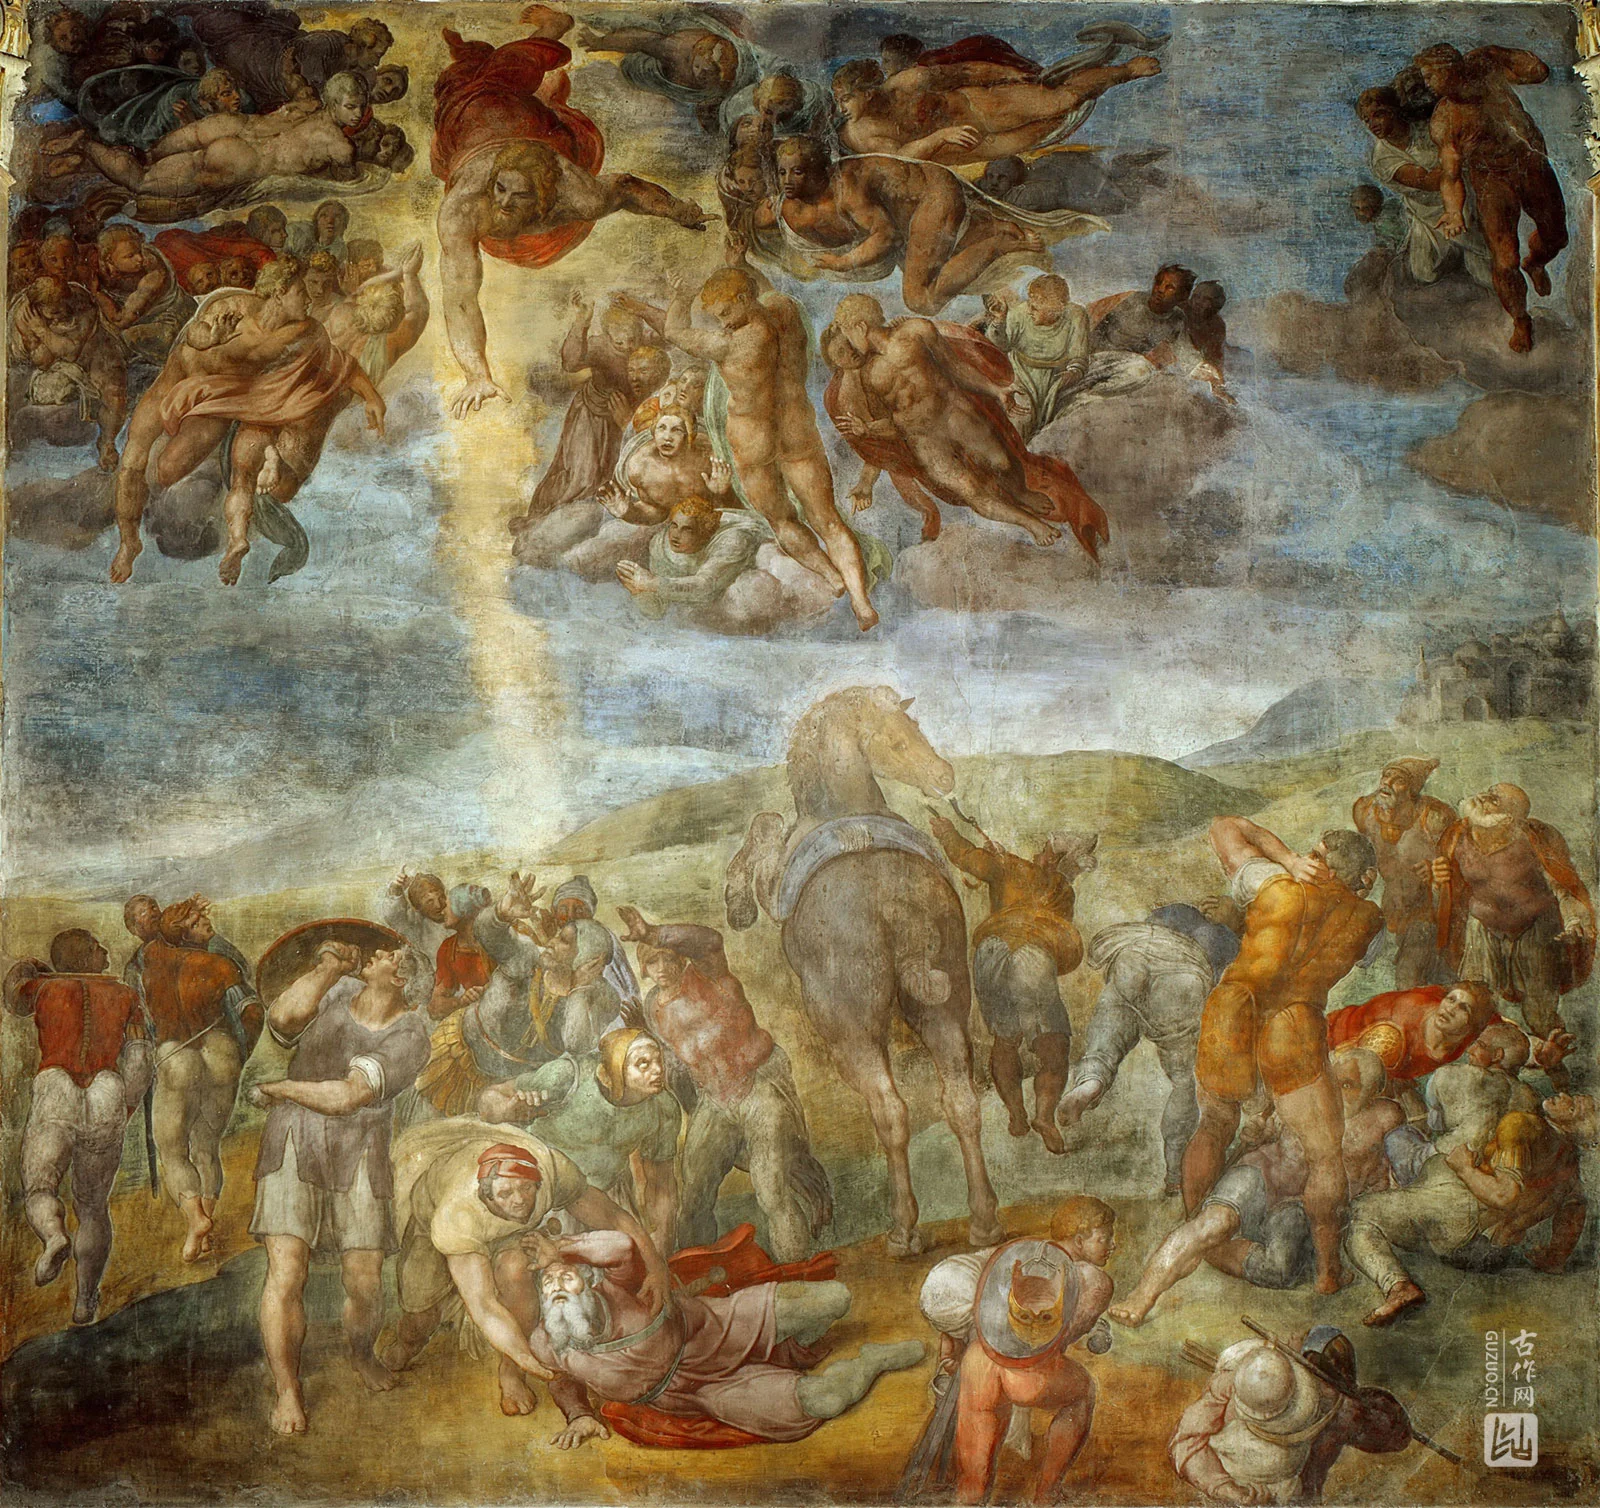 米开朗基罗壁画作品《扫罗的改变》高清大图